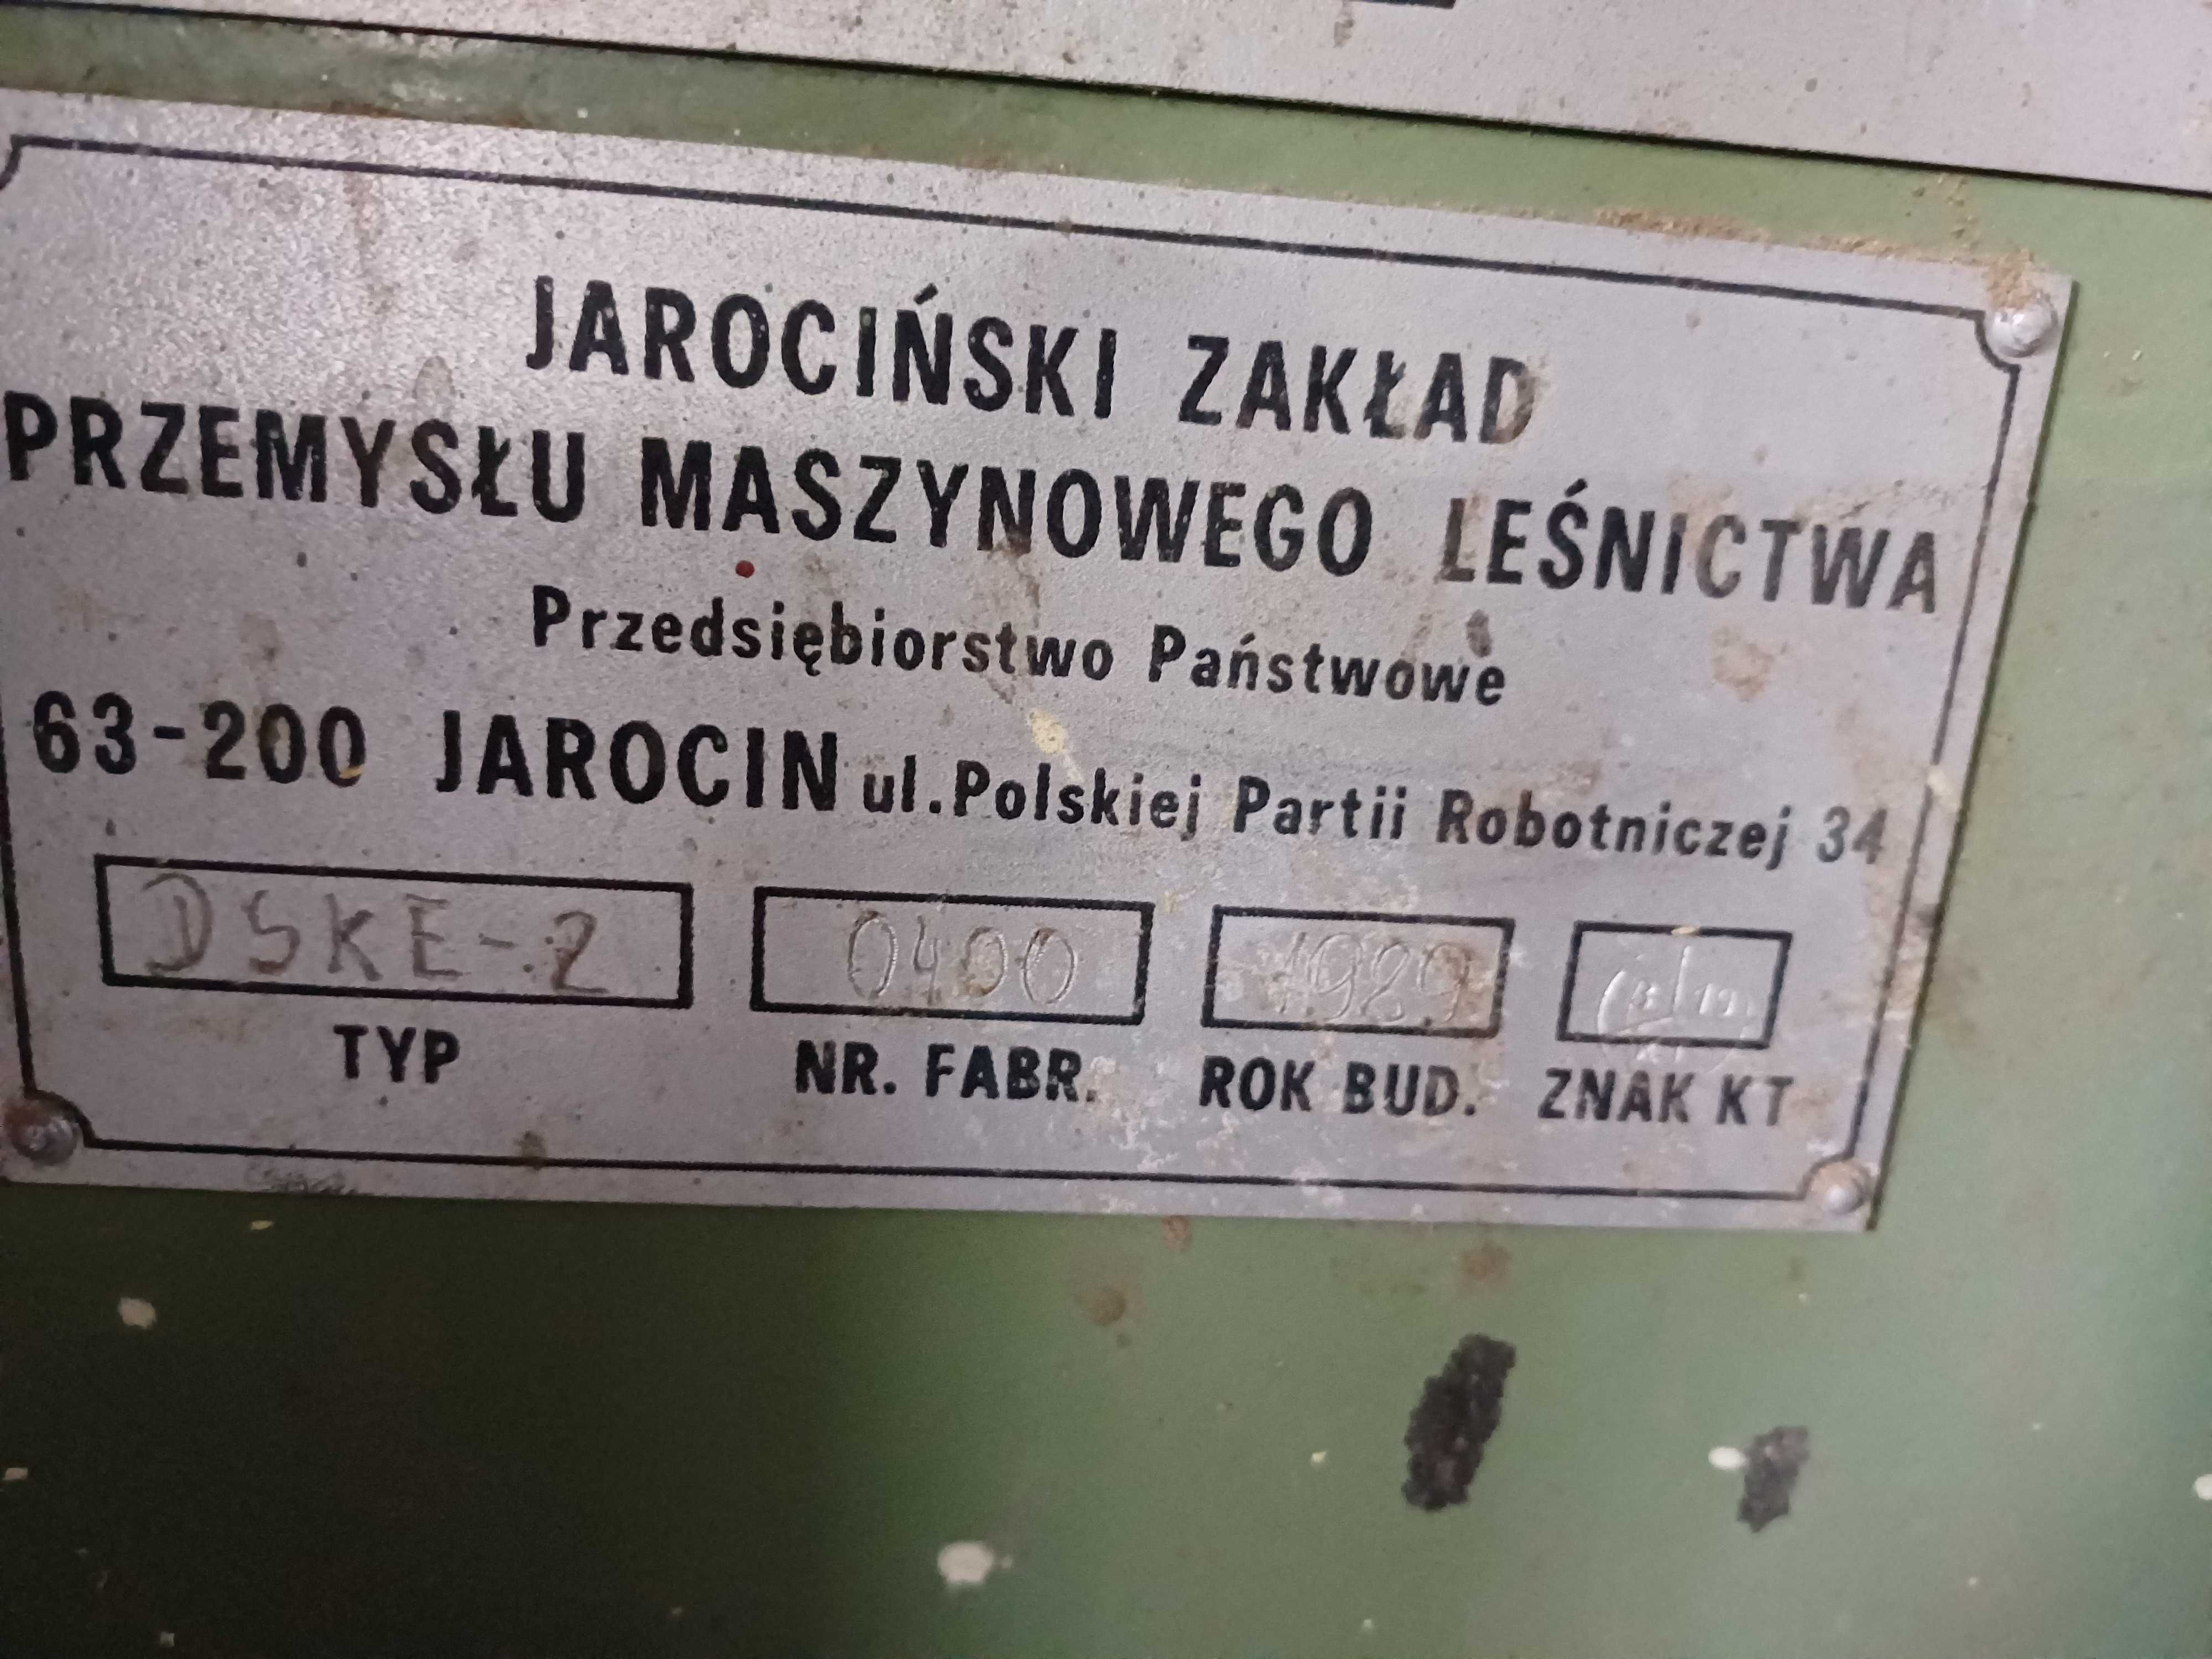 Maszyna stolarska JAROMA DSKE-2